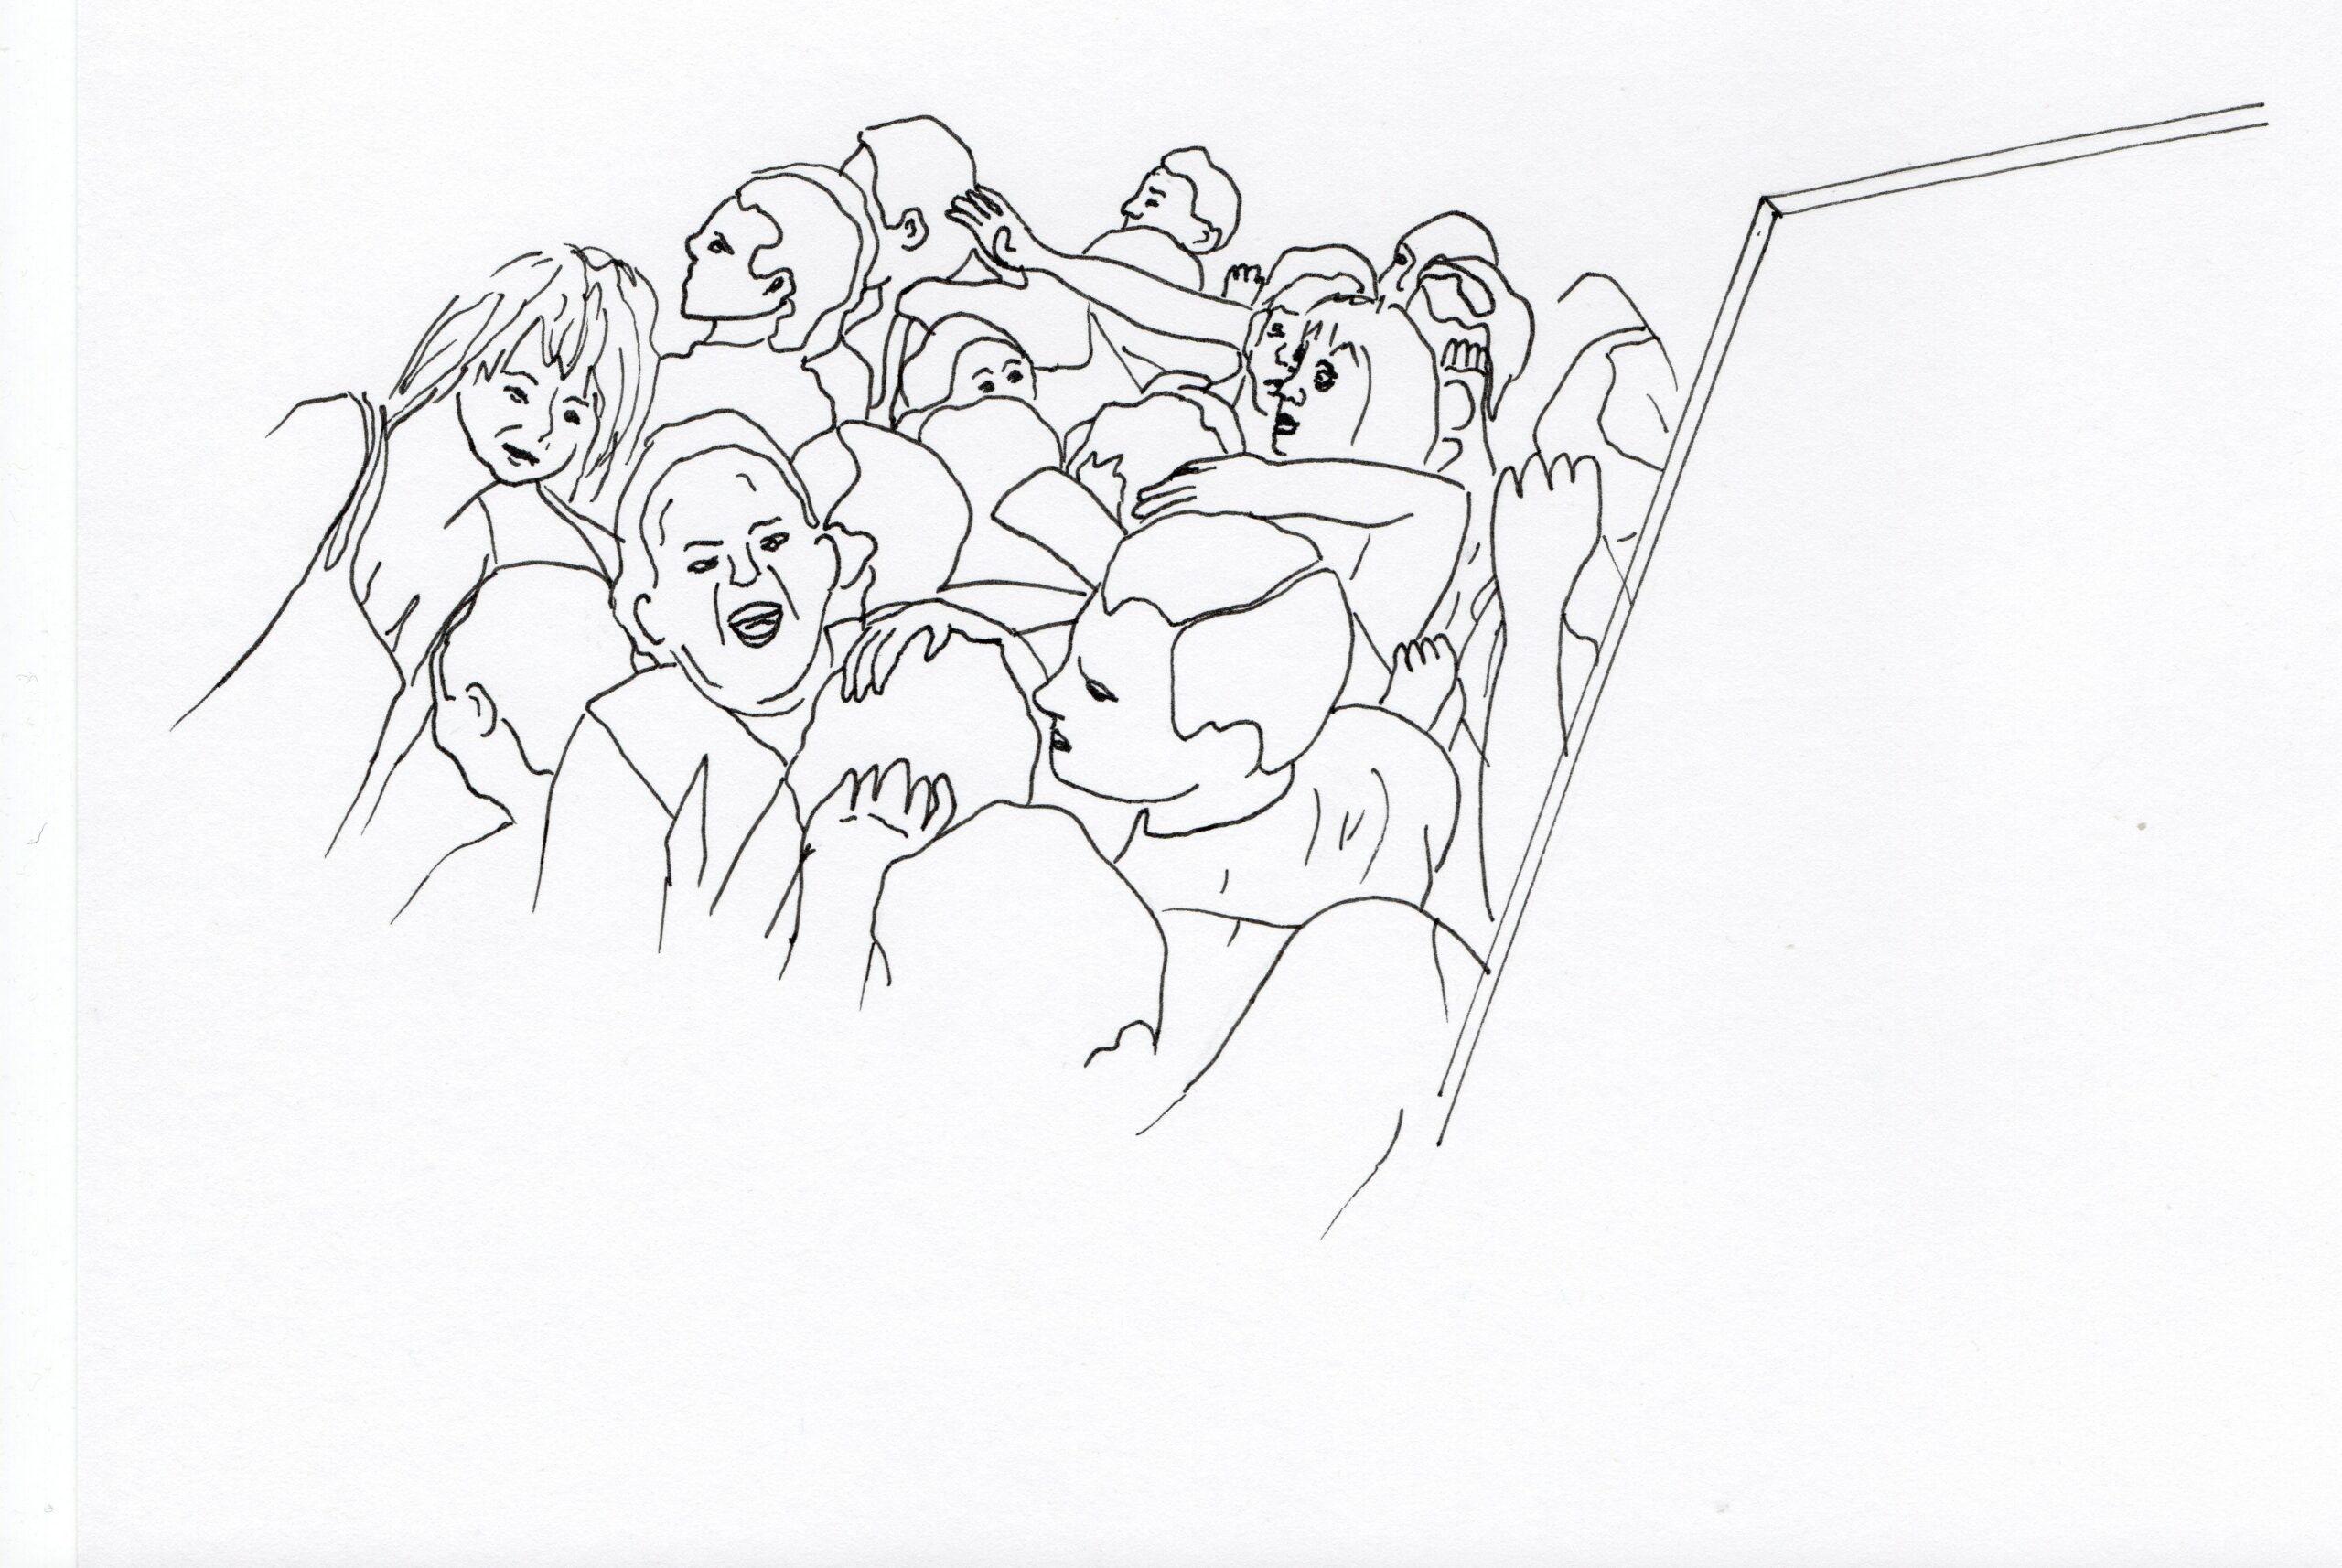 Machins trucs chouettes - Anne Dessin crayon noir, Intenable groupe de musique, foule en folie, sortir par la porte